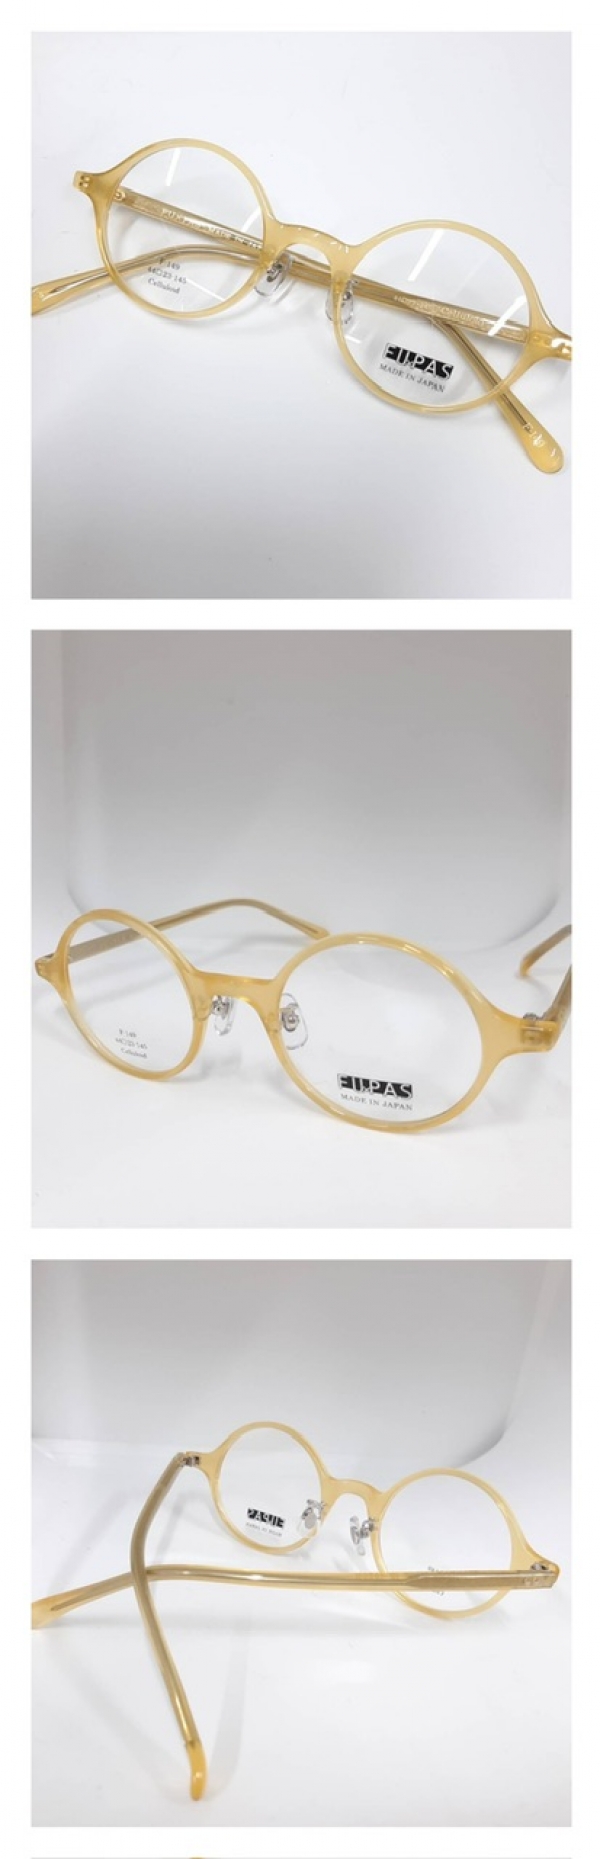 新着情報|岸和田レンズ工業は大阪の泉州岸和田でメガネ、眼鏡レンズの